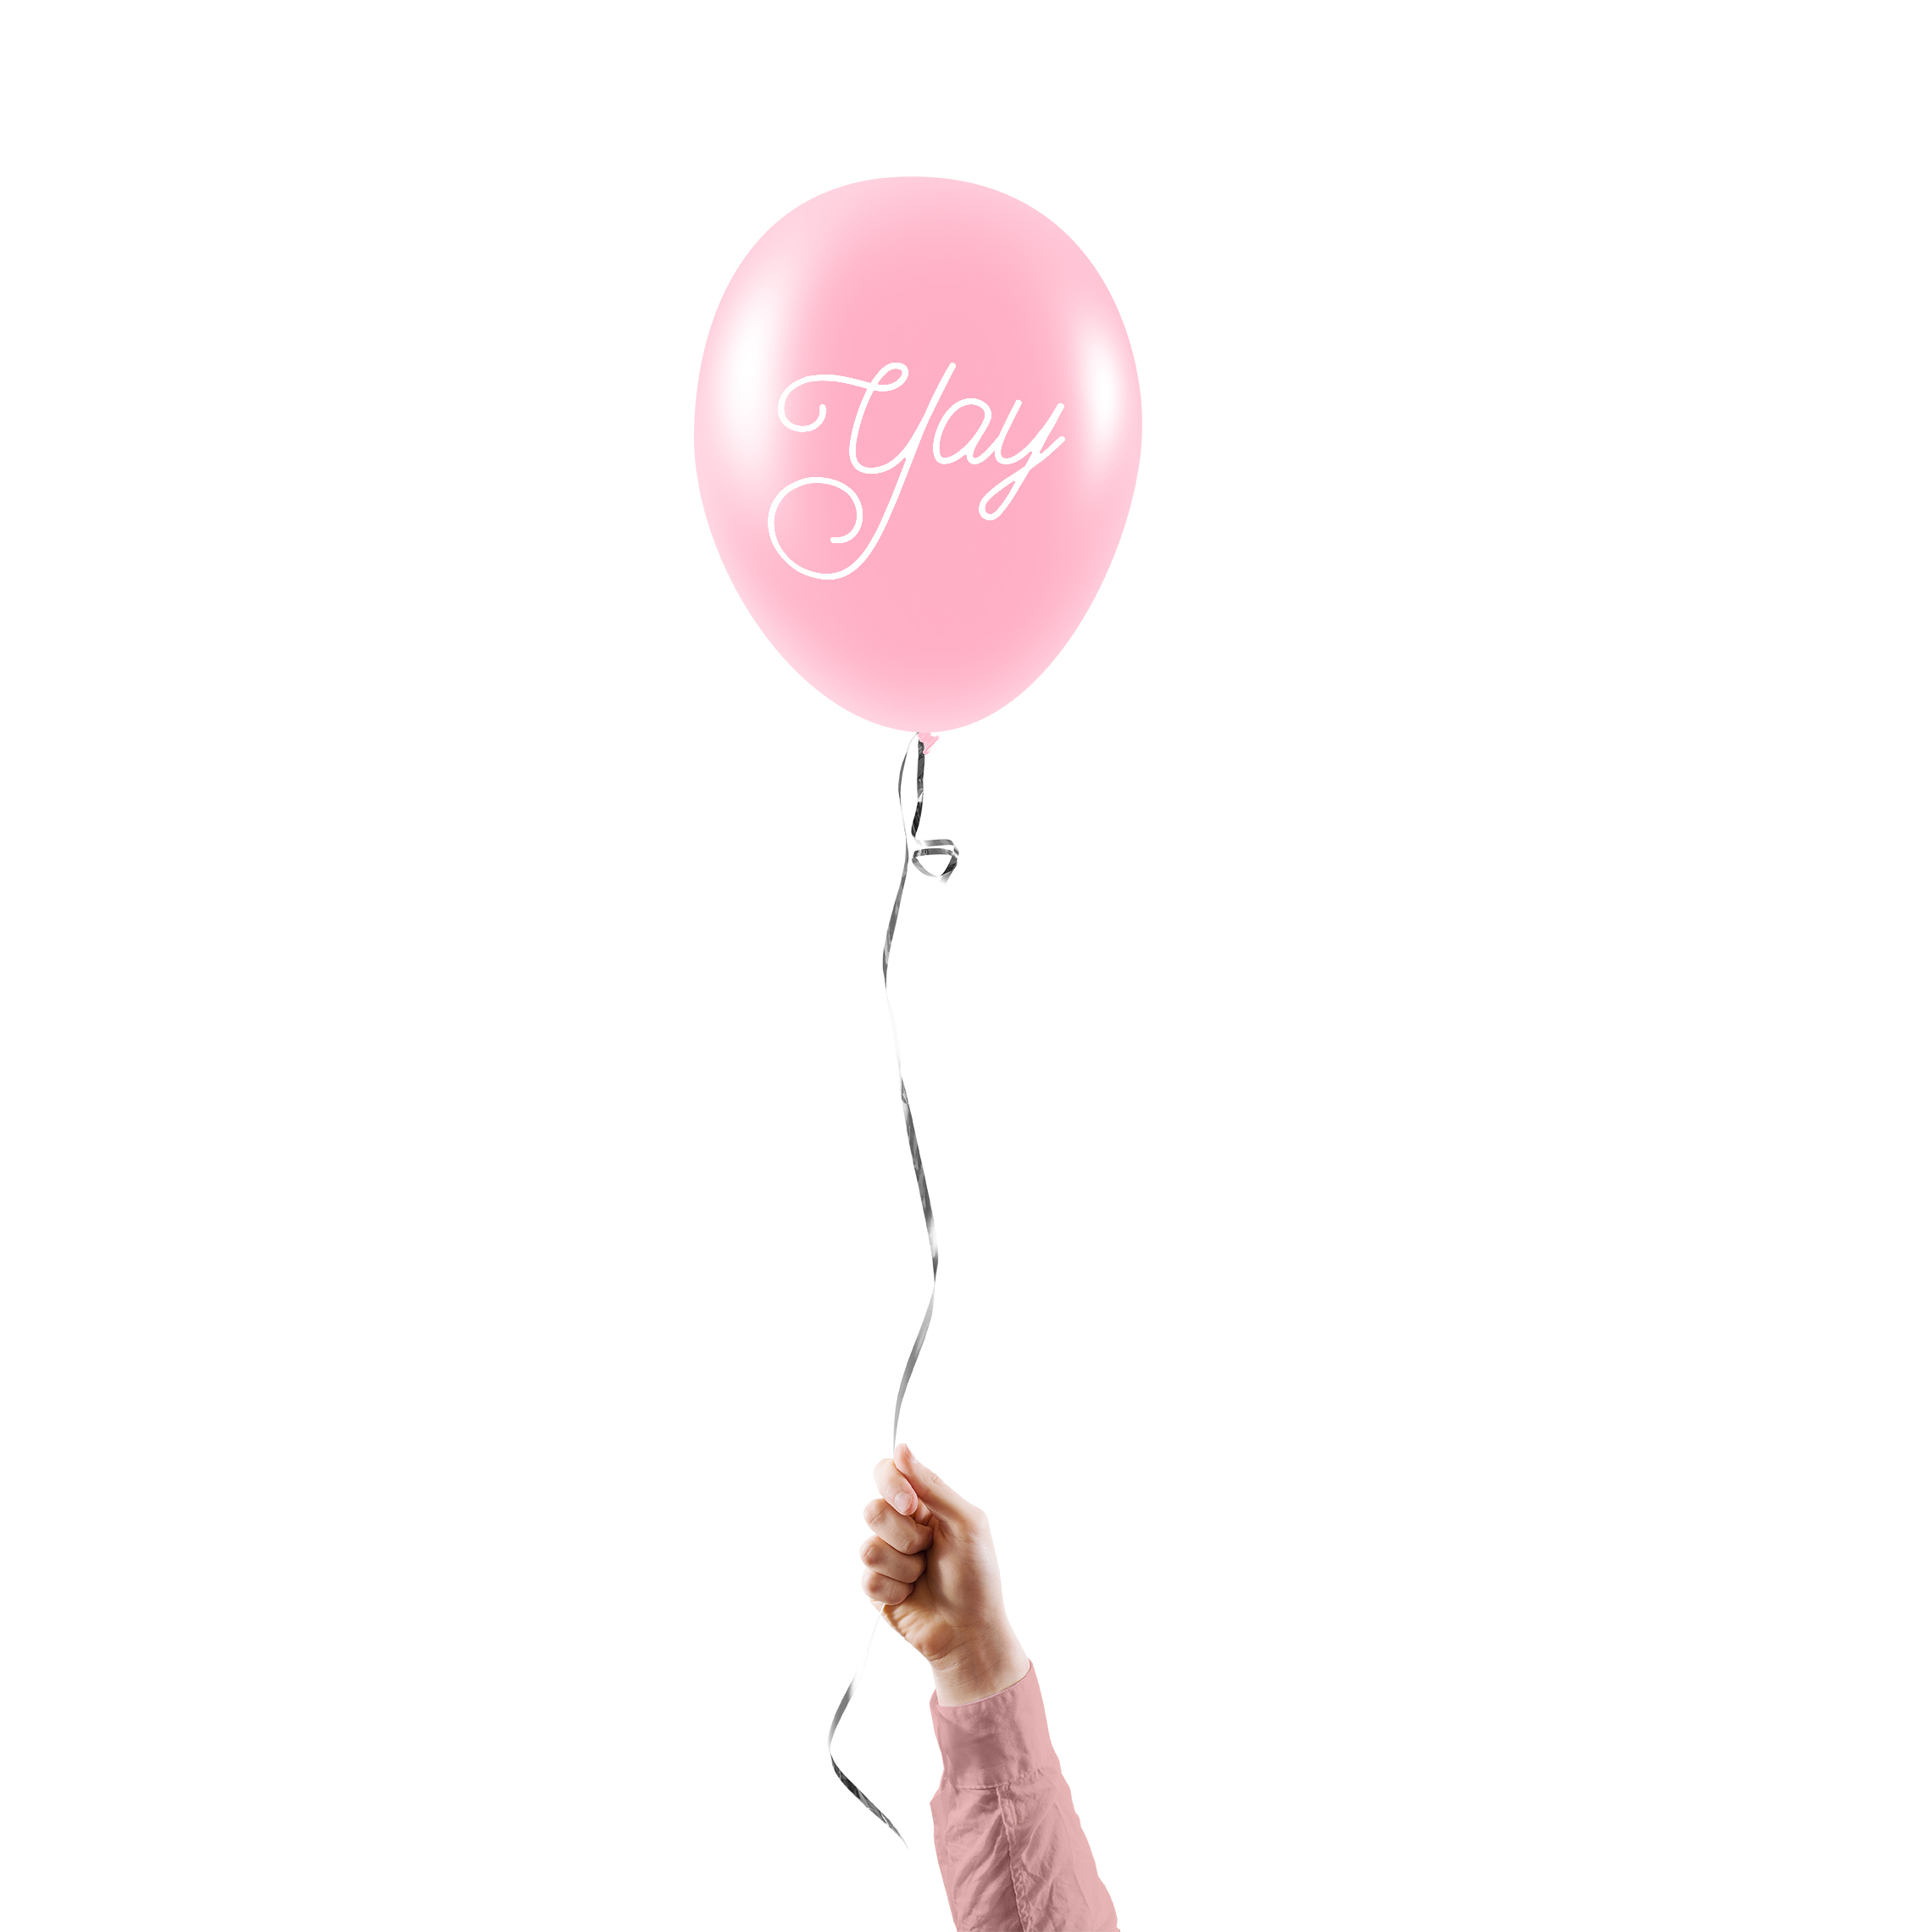 Balloon_Pink.jpg